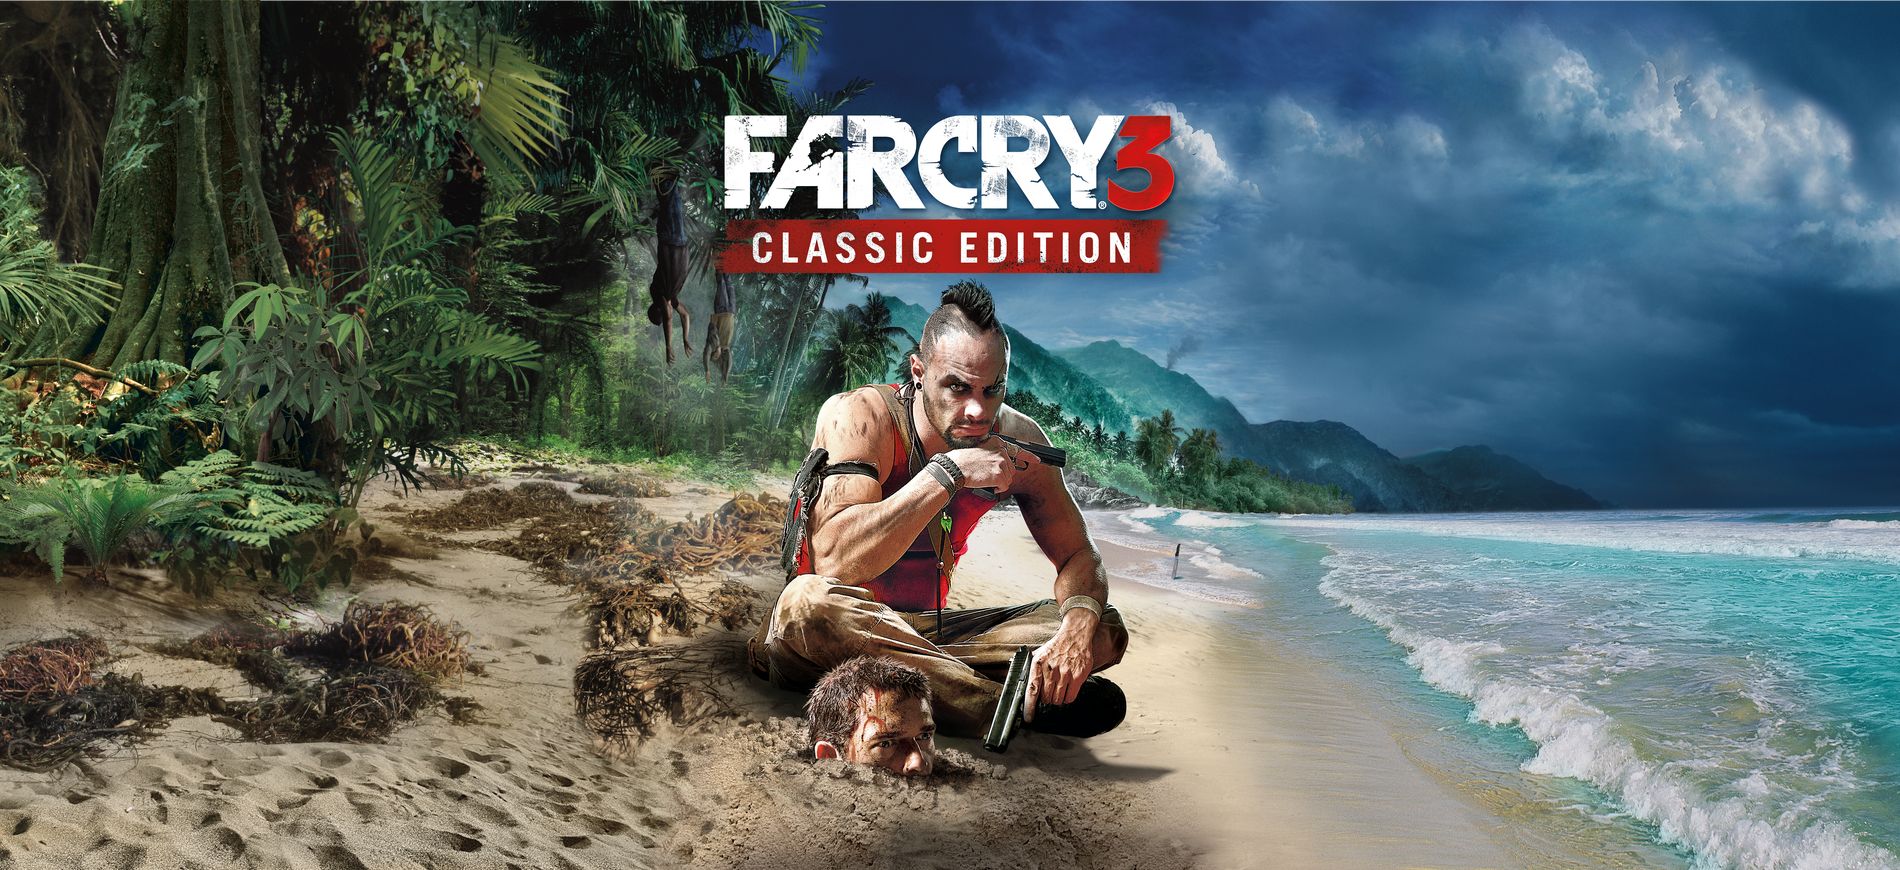 RegiónTV | Toma de contacto: Far Cry 3 Classic Edition